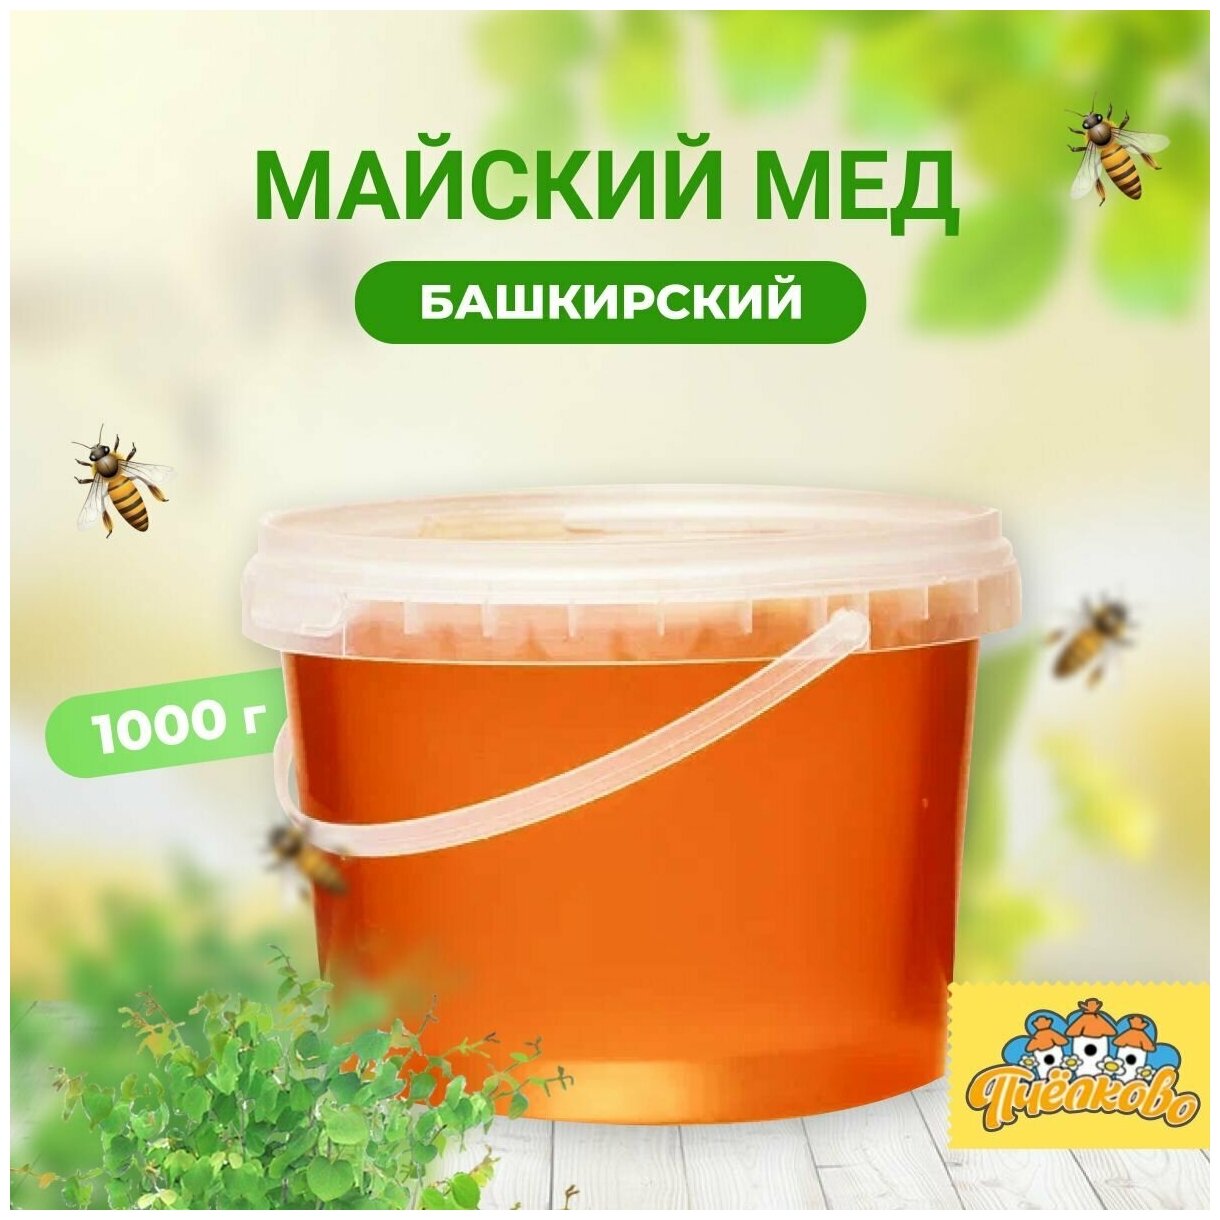 Башкирский майский мед "Пчёлково" 1000 г - фотография № 1